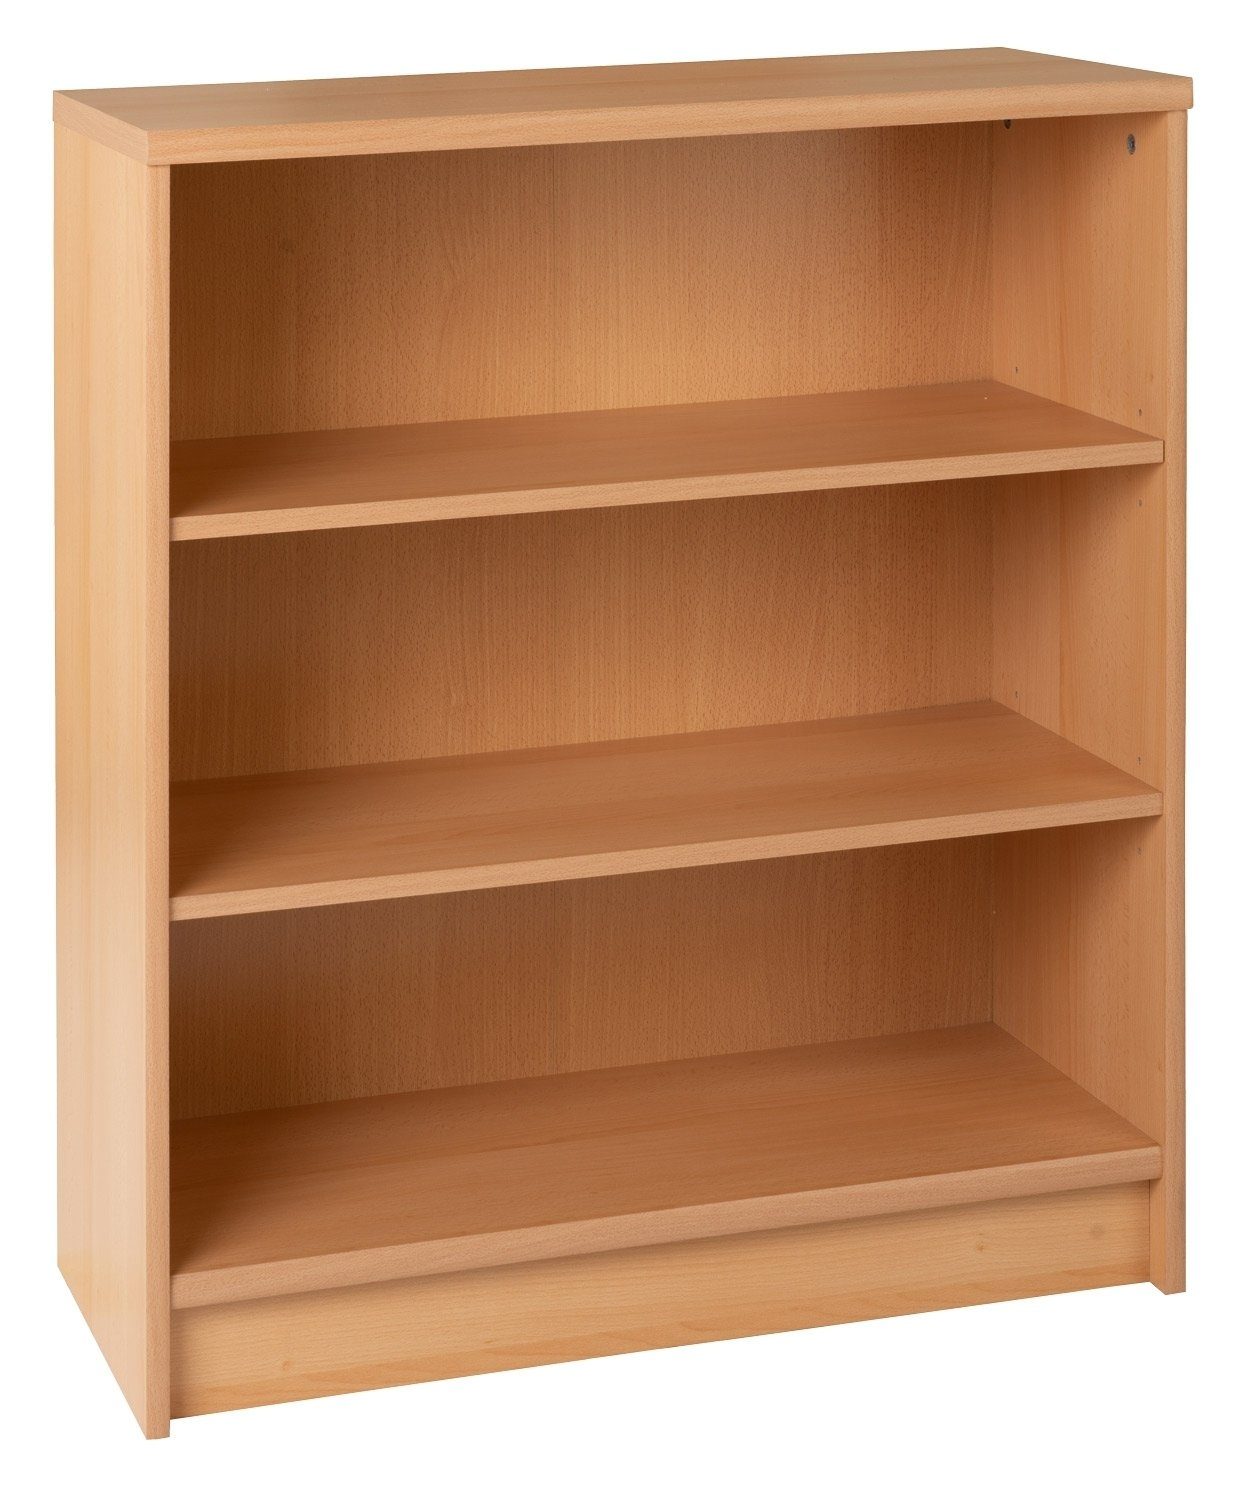 Regal Bücherregal OPTIMUS, B 72 cm, H 86 cm, braun Buchedekor, 2 höhenverstellbare Einlegeböden | Regale